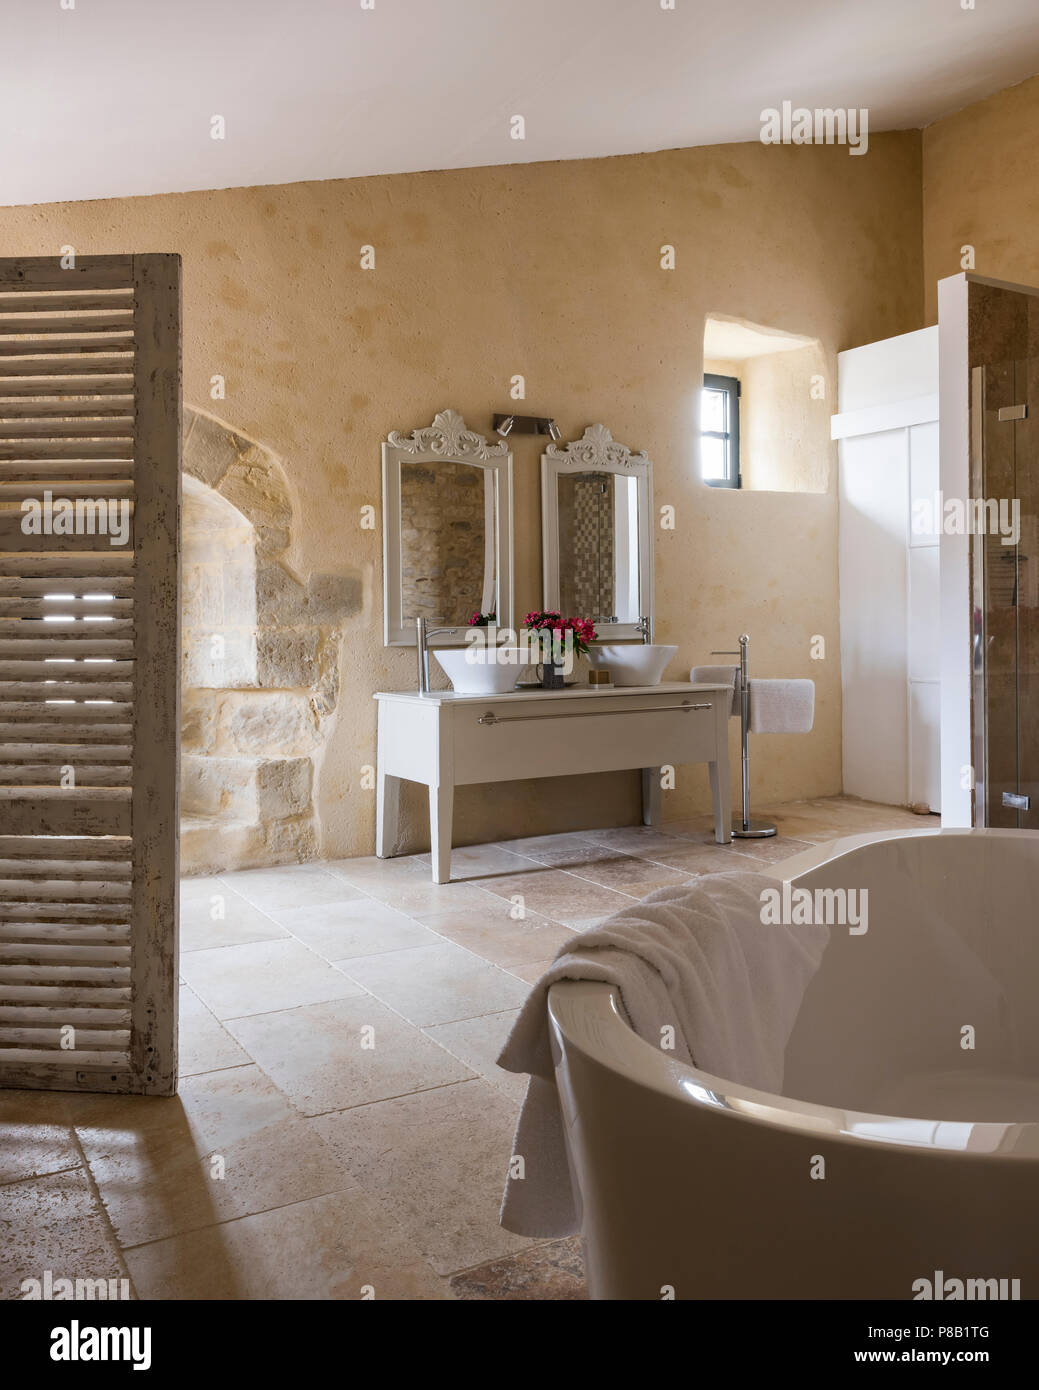 Freistehende lackiert shutter Bildschirm im Badezimmer mit freistehender  Badewanne Stockfotografie - Alamy